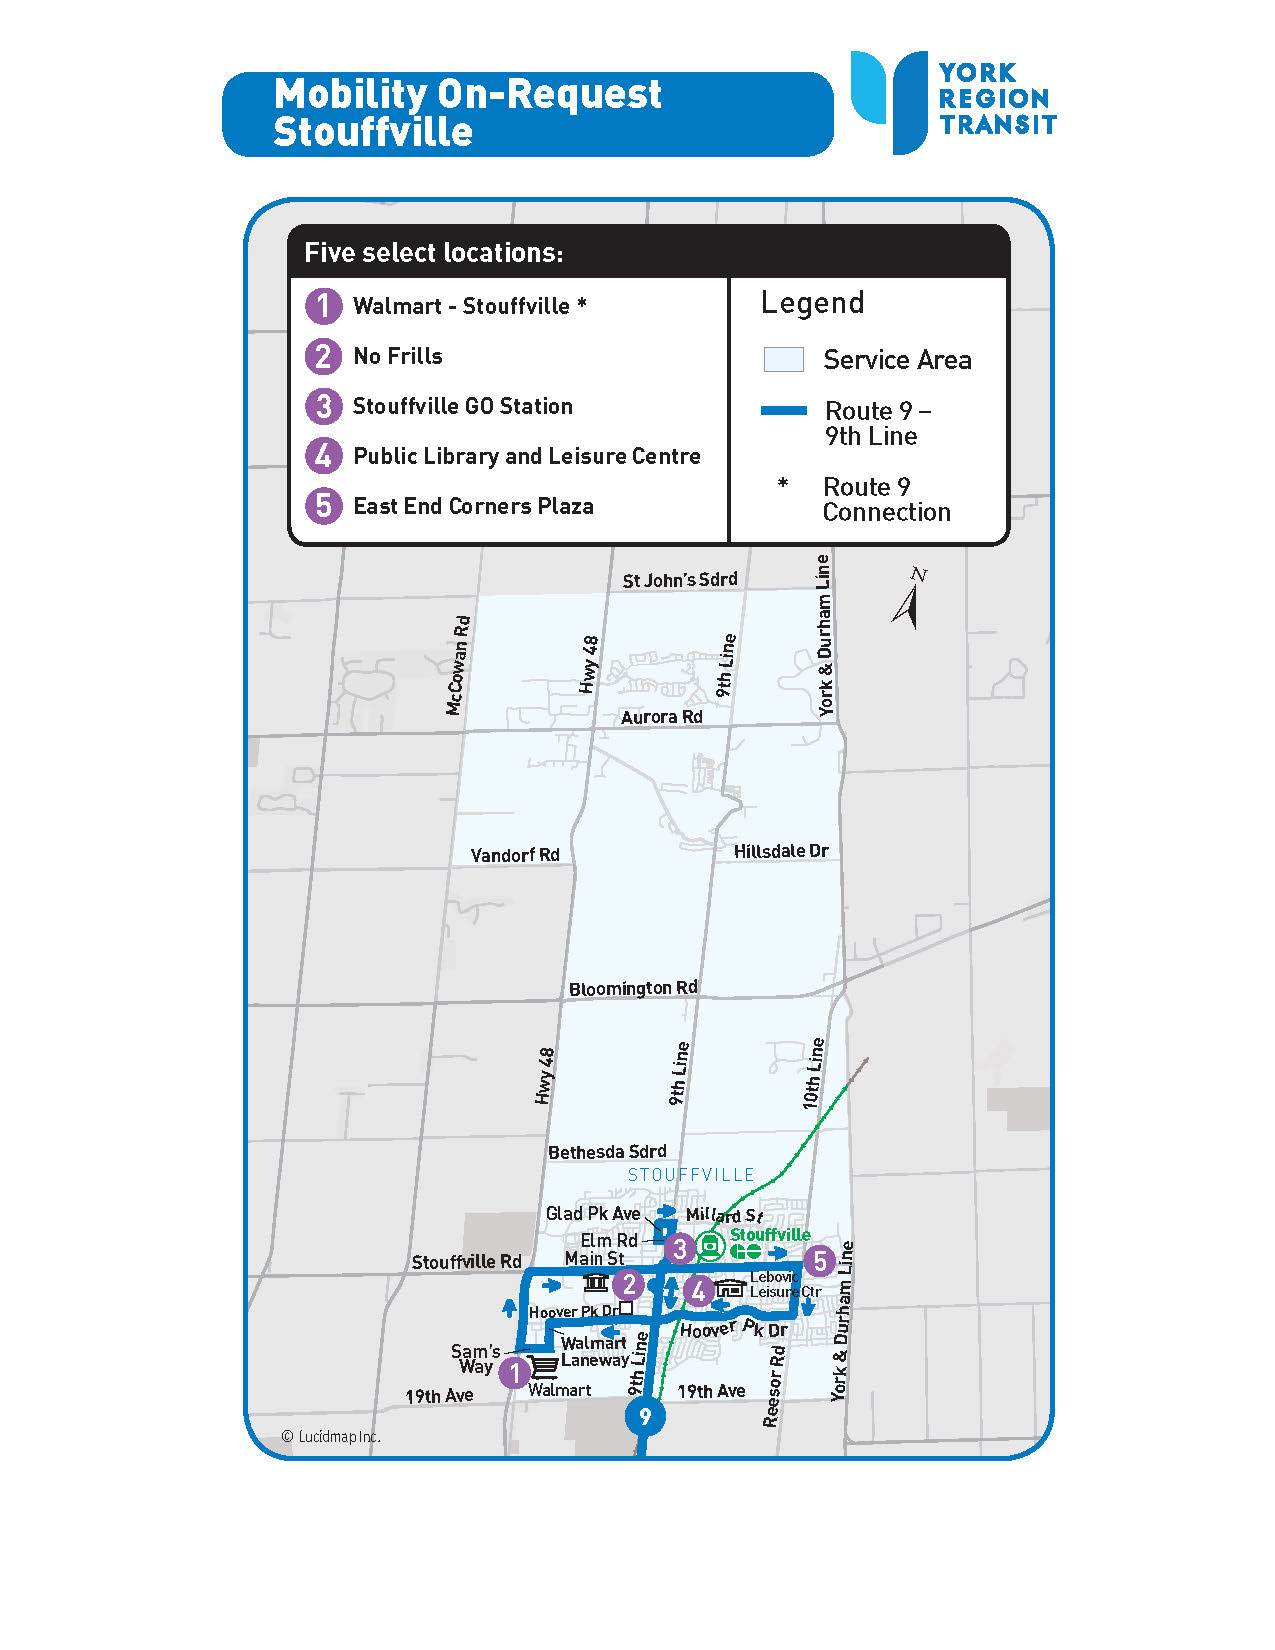 MOR Stouffville service area map